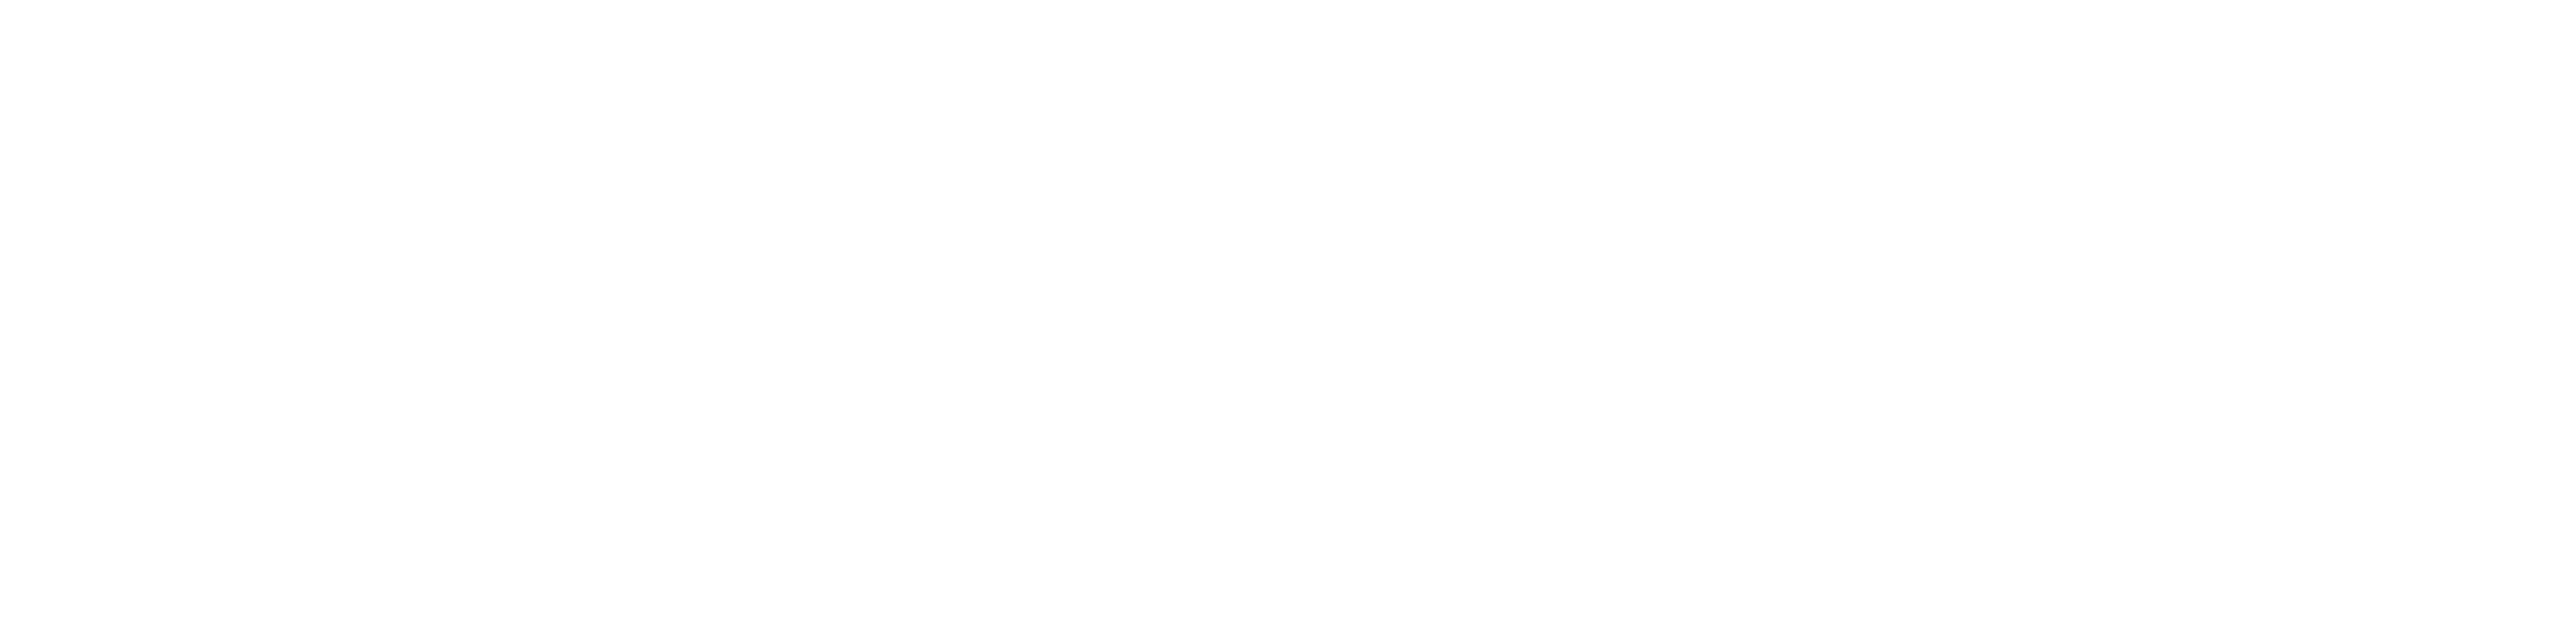 white logo of live nation